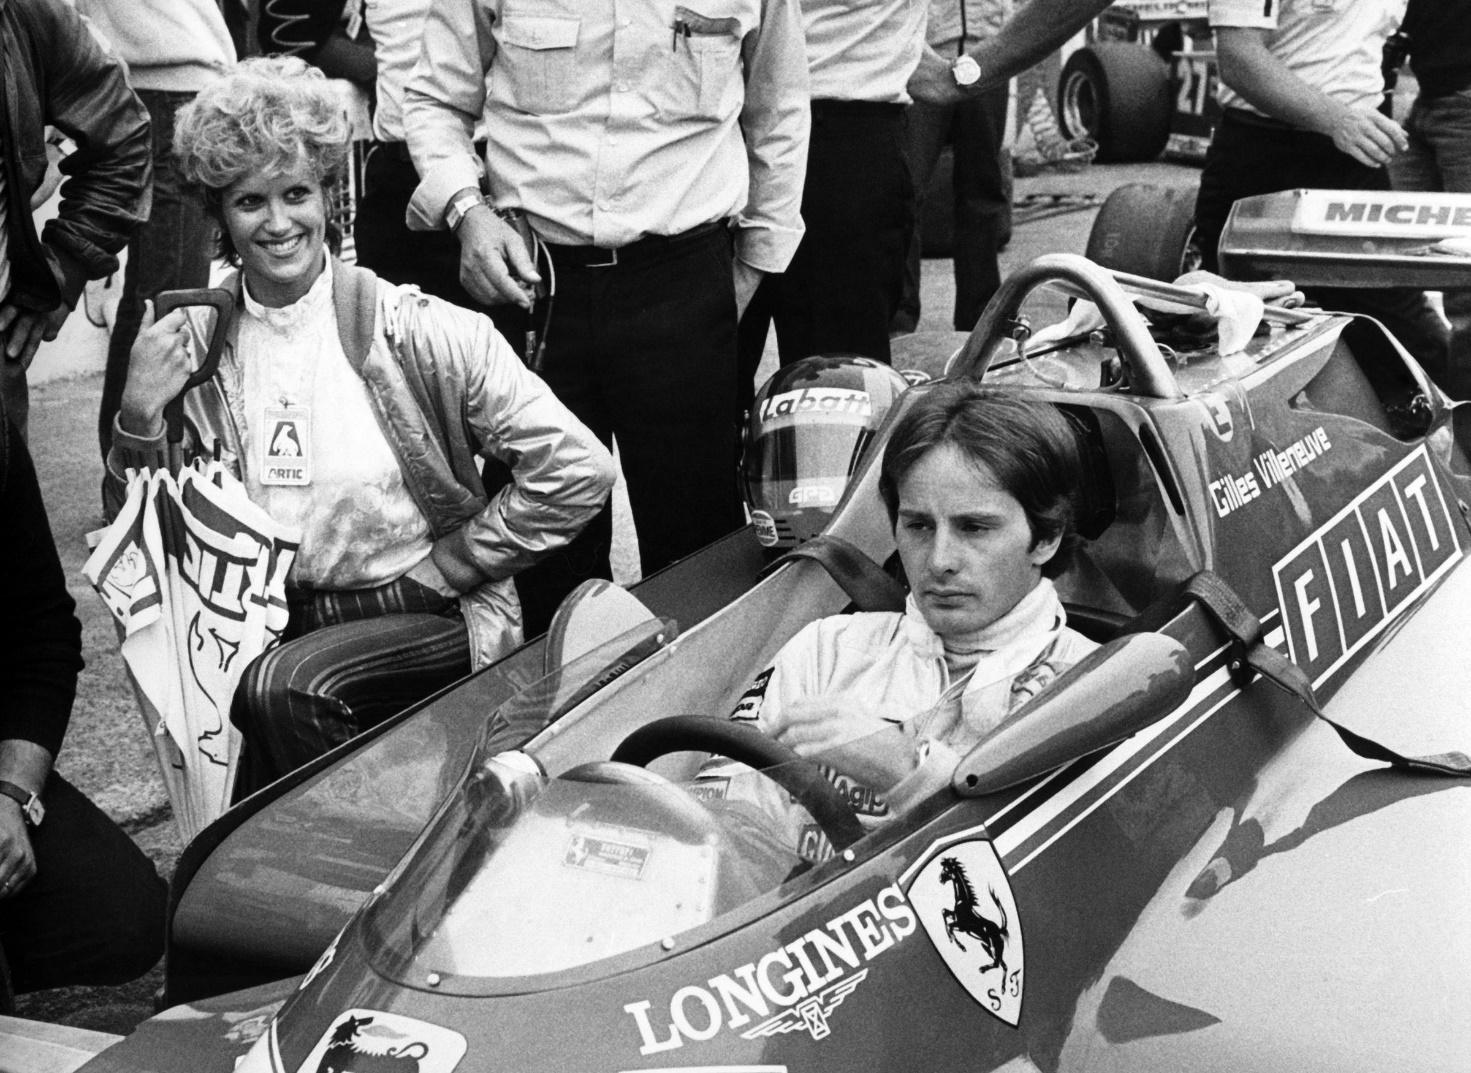 Gilles Villeneuve est encore l'un des pilotes favoris dans des fans de Ferrari, 40 ans après sa mort